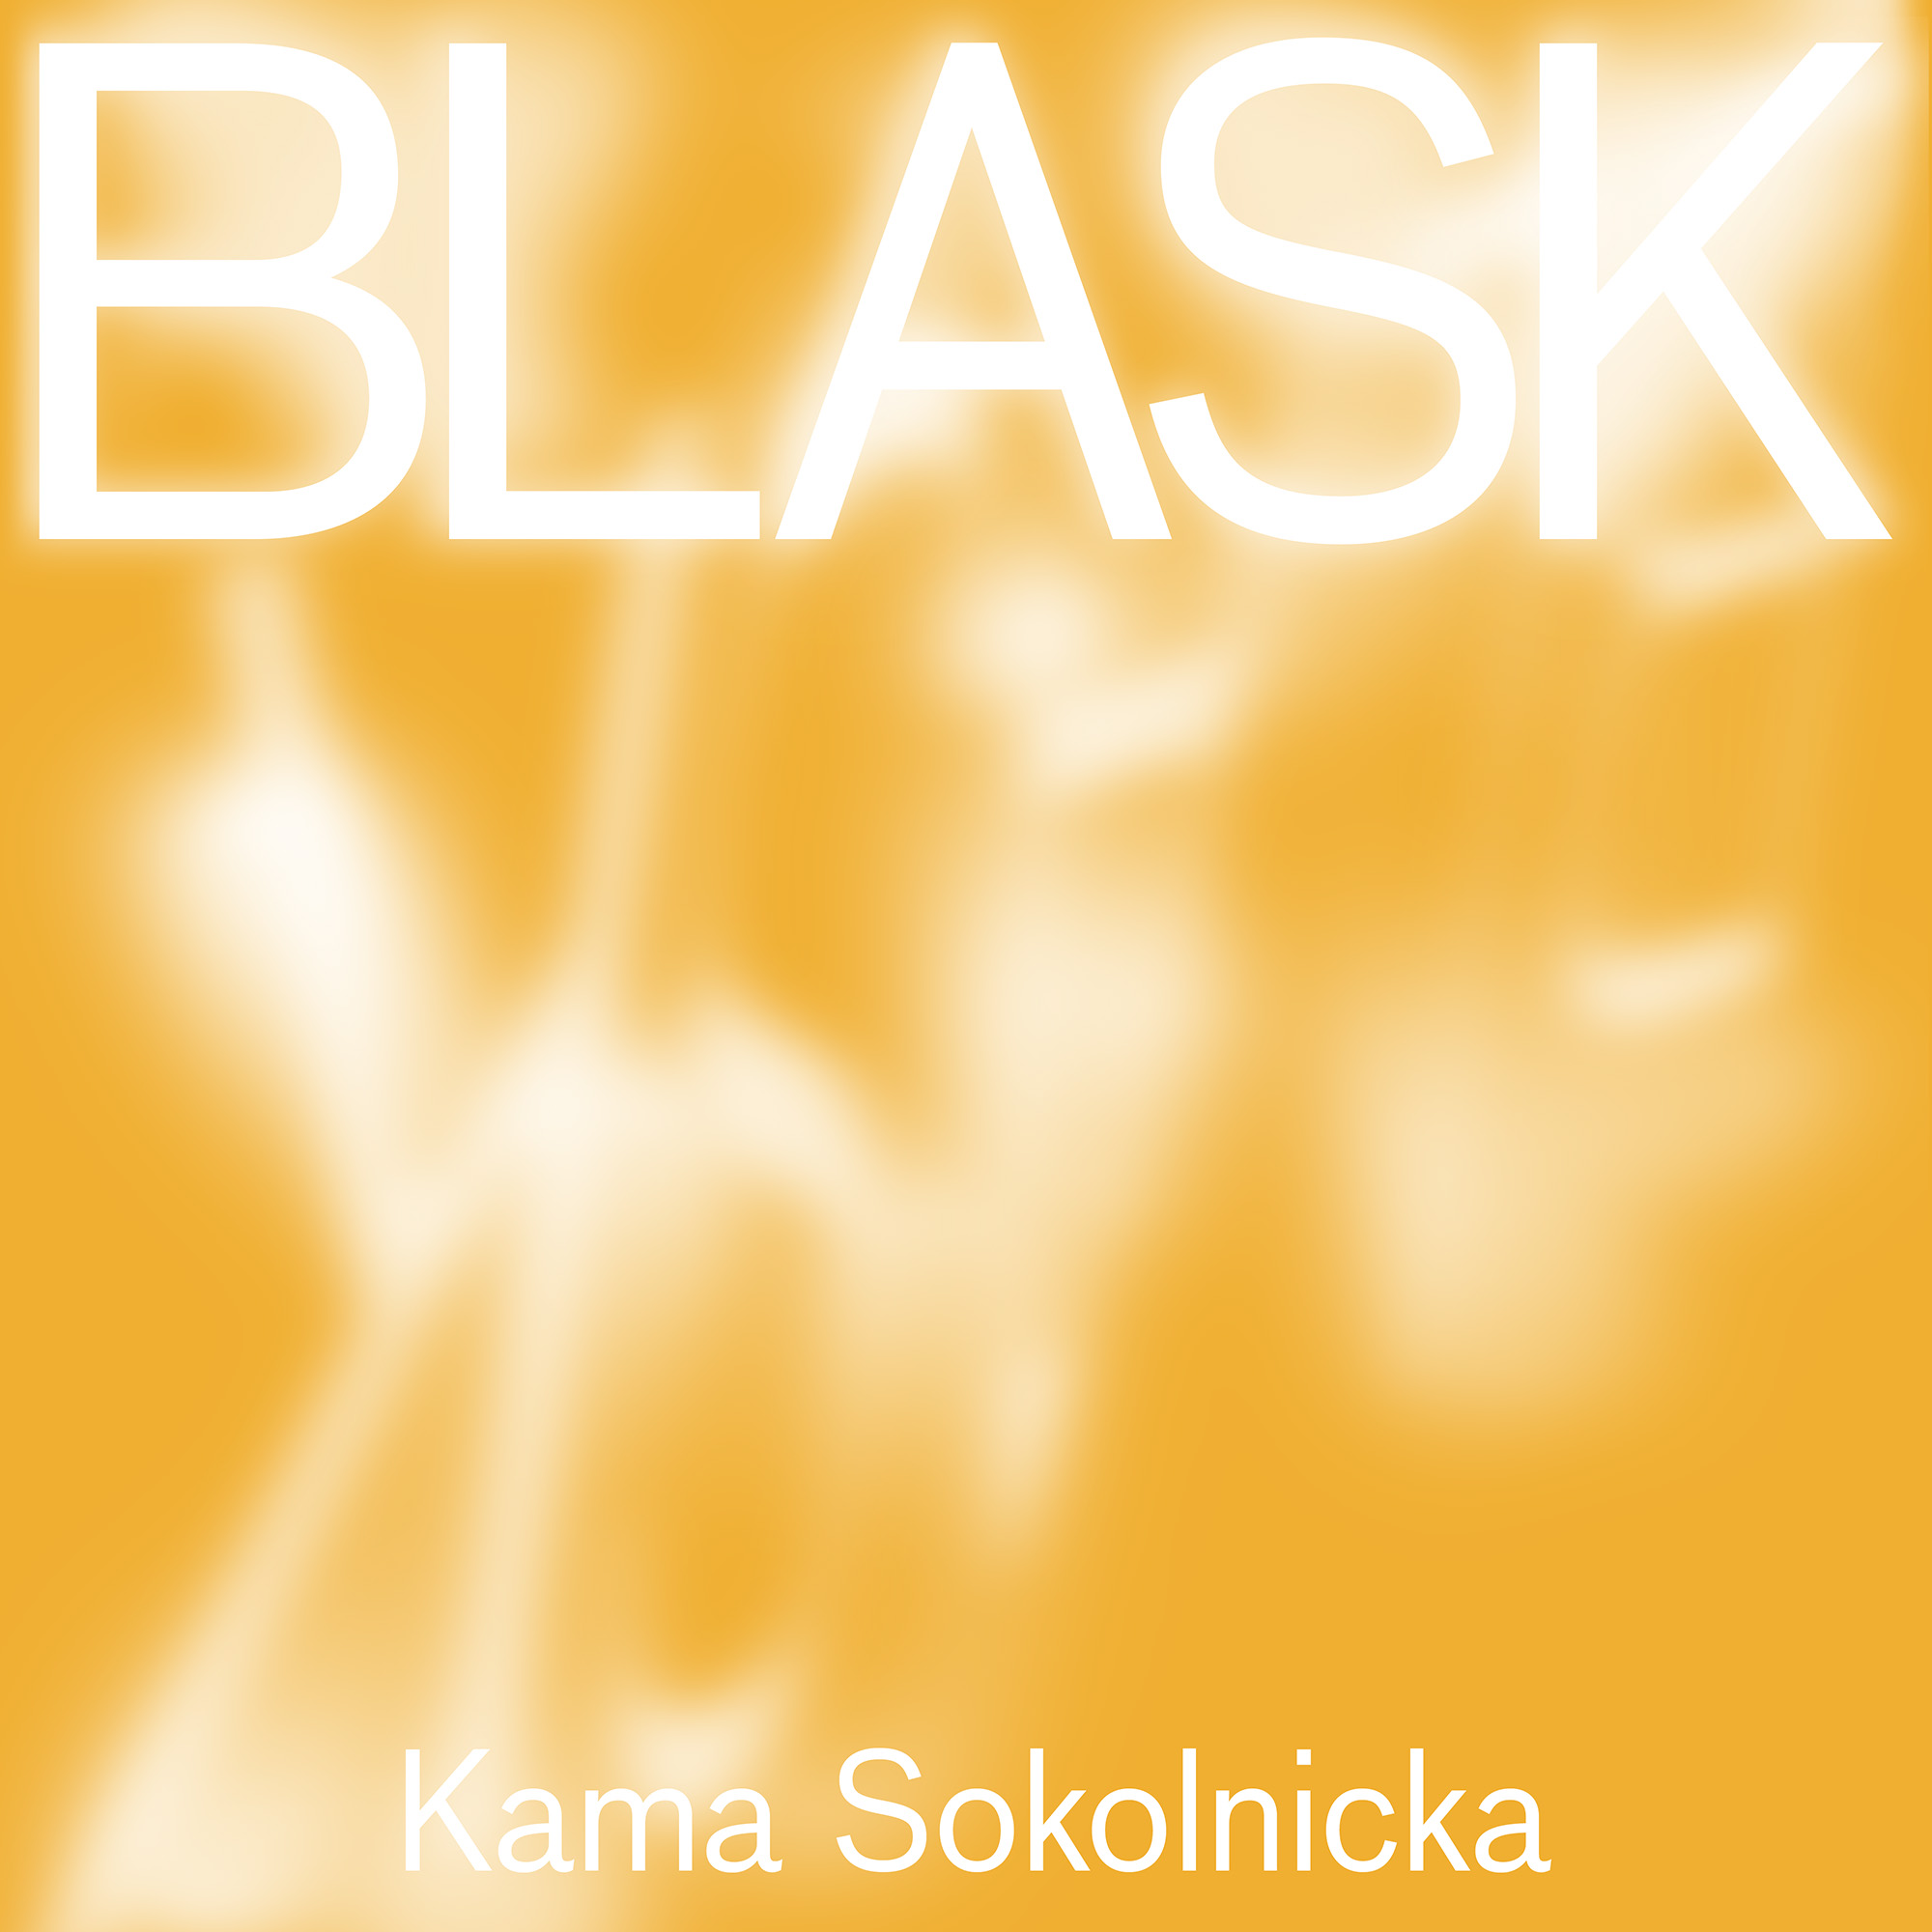 Kama Sokolnicka. Blask